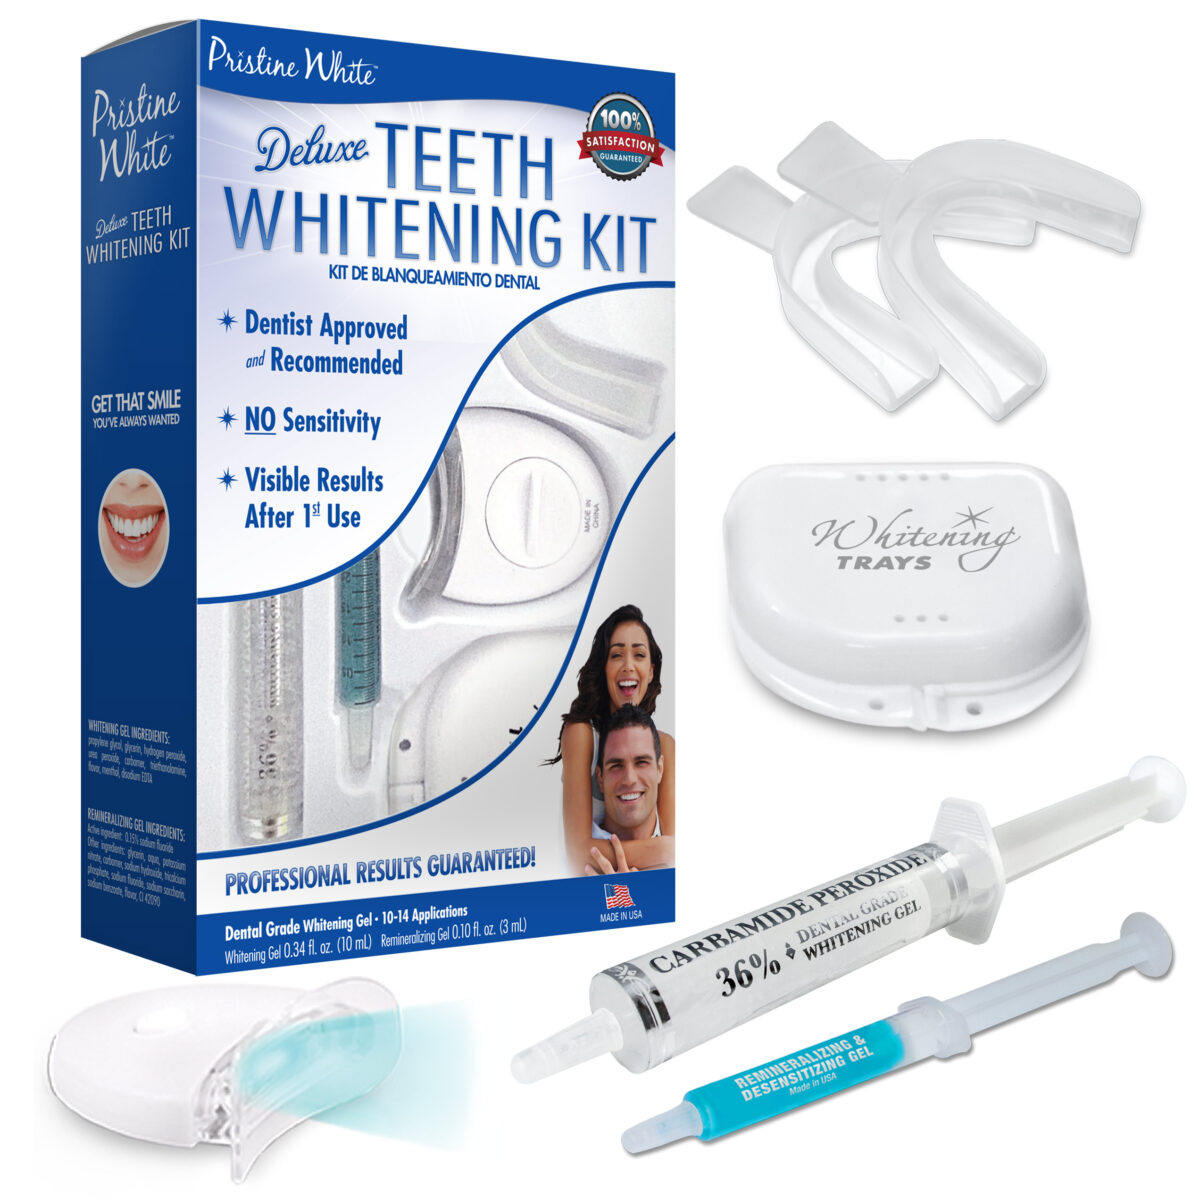 Pristine White Deluxe Teeth Whitening Kit